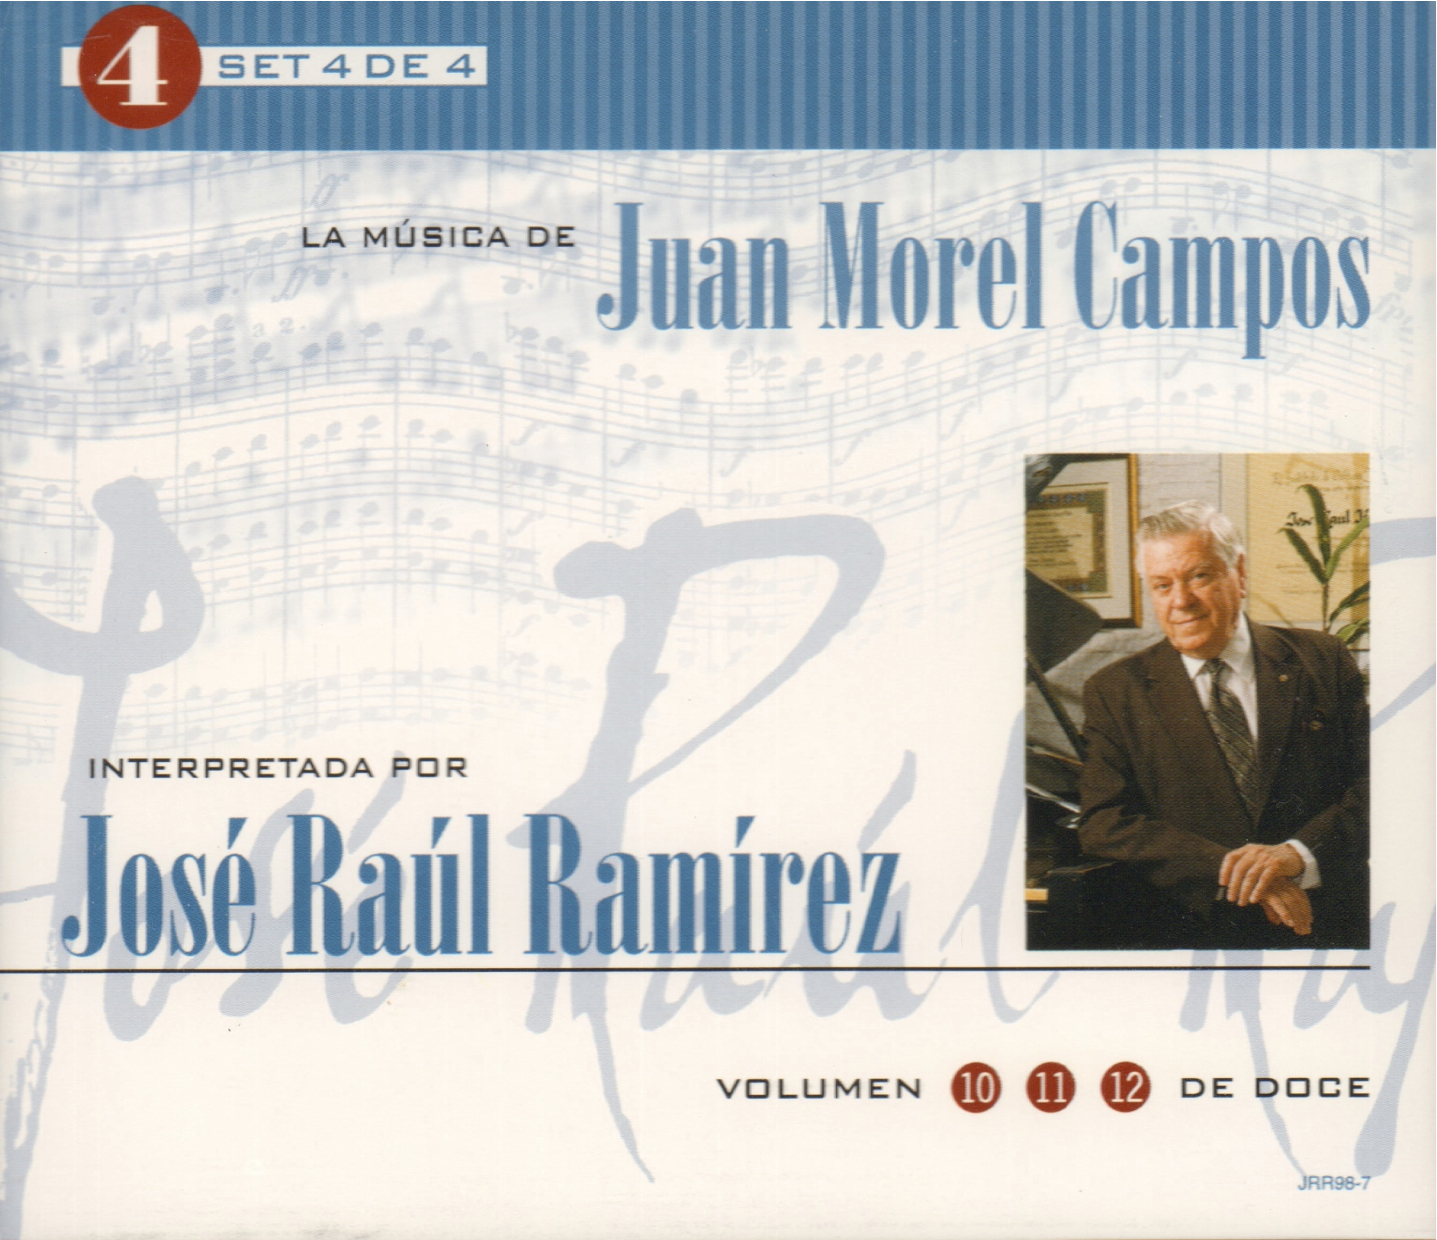 Set 4 de 4: La Música de Juan Morel Campos interpretada por José Raúl Ramírez